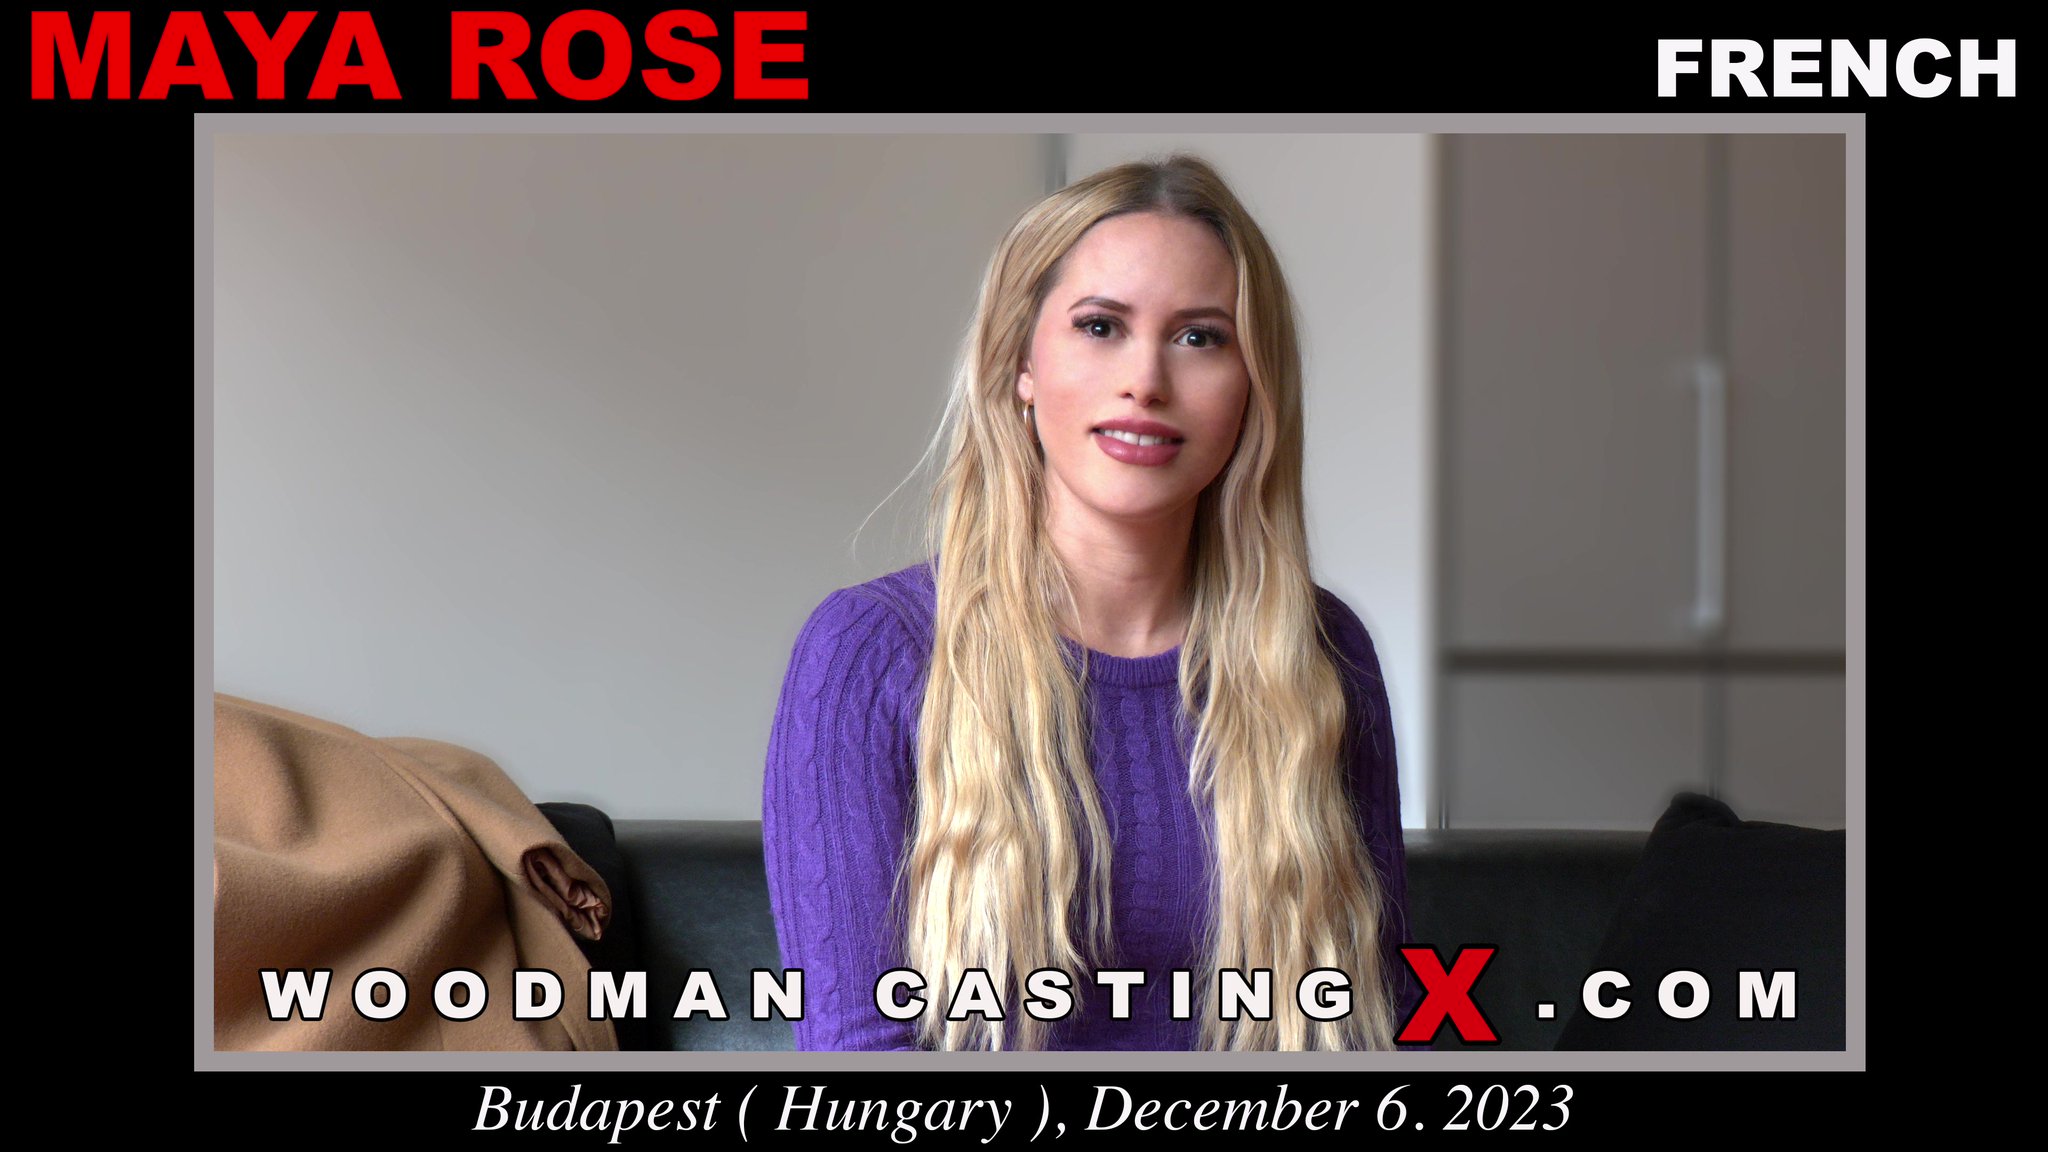 Woodman Casting X on X: [New Video] Maya Rose t.coq4KRHLlYbU  t.coxSz0PtCkww  X